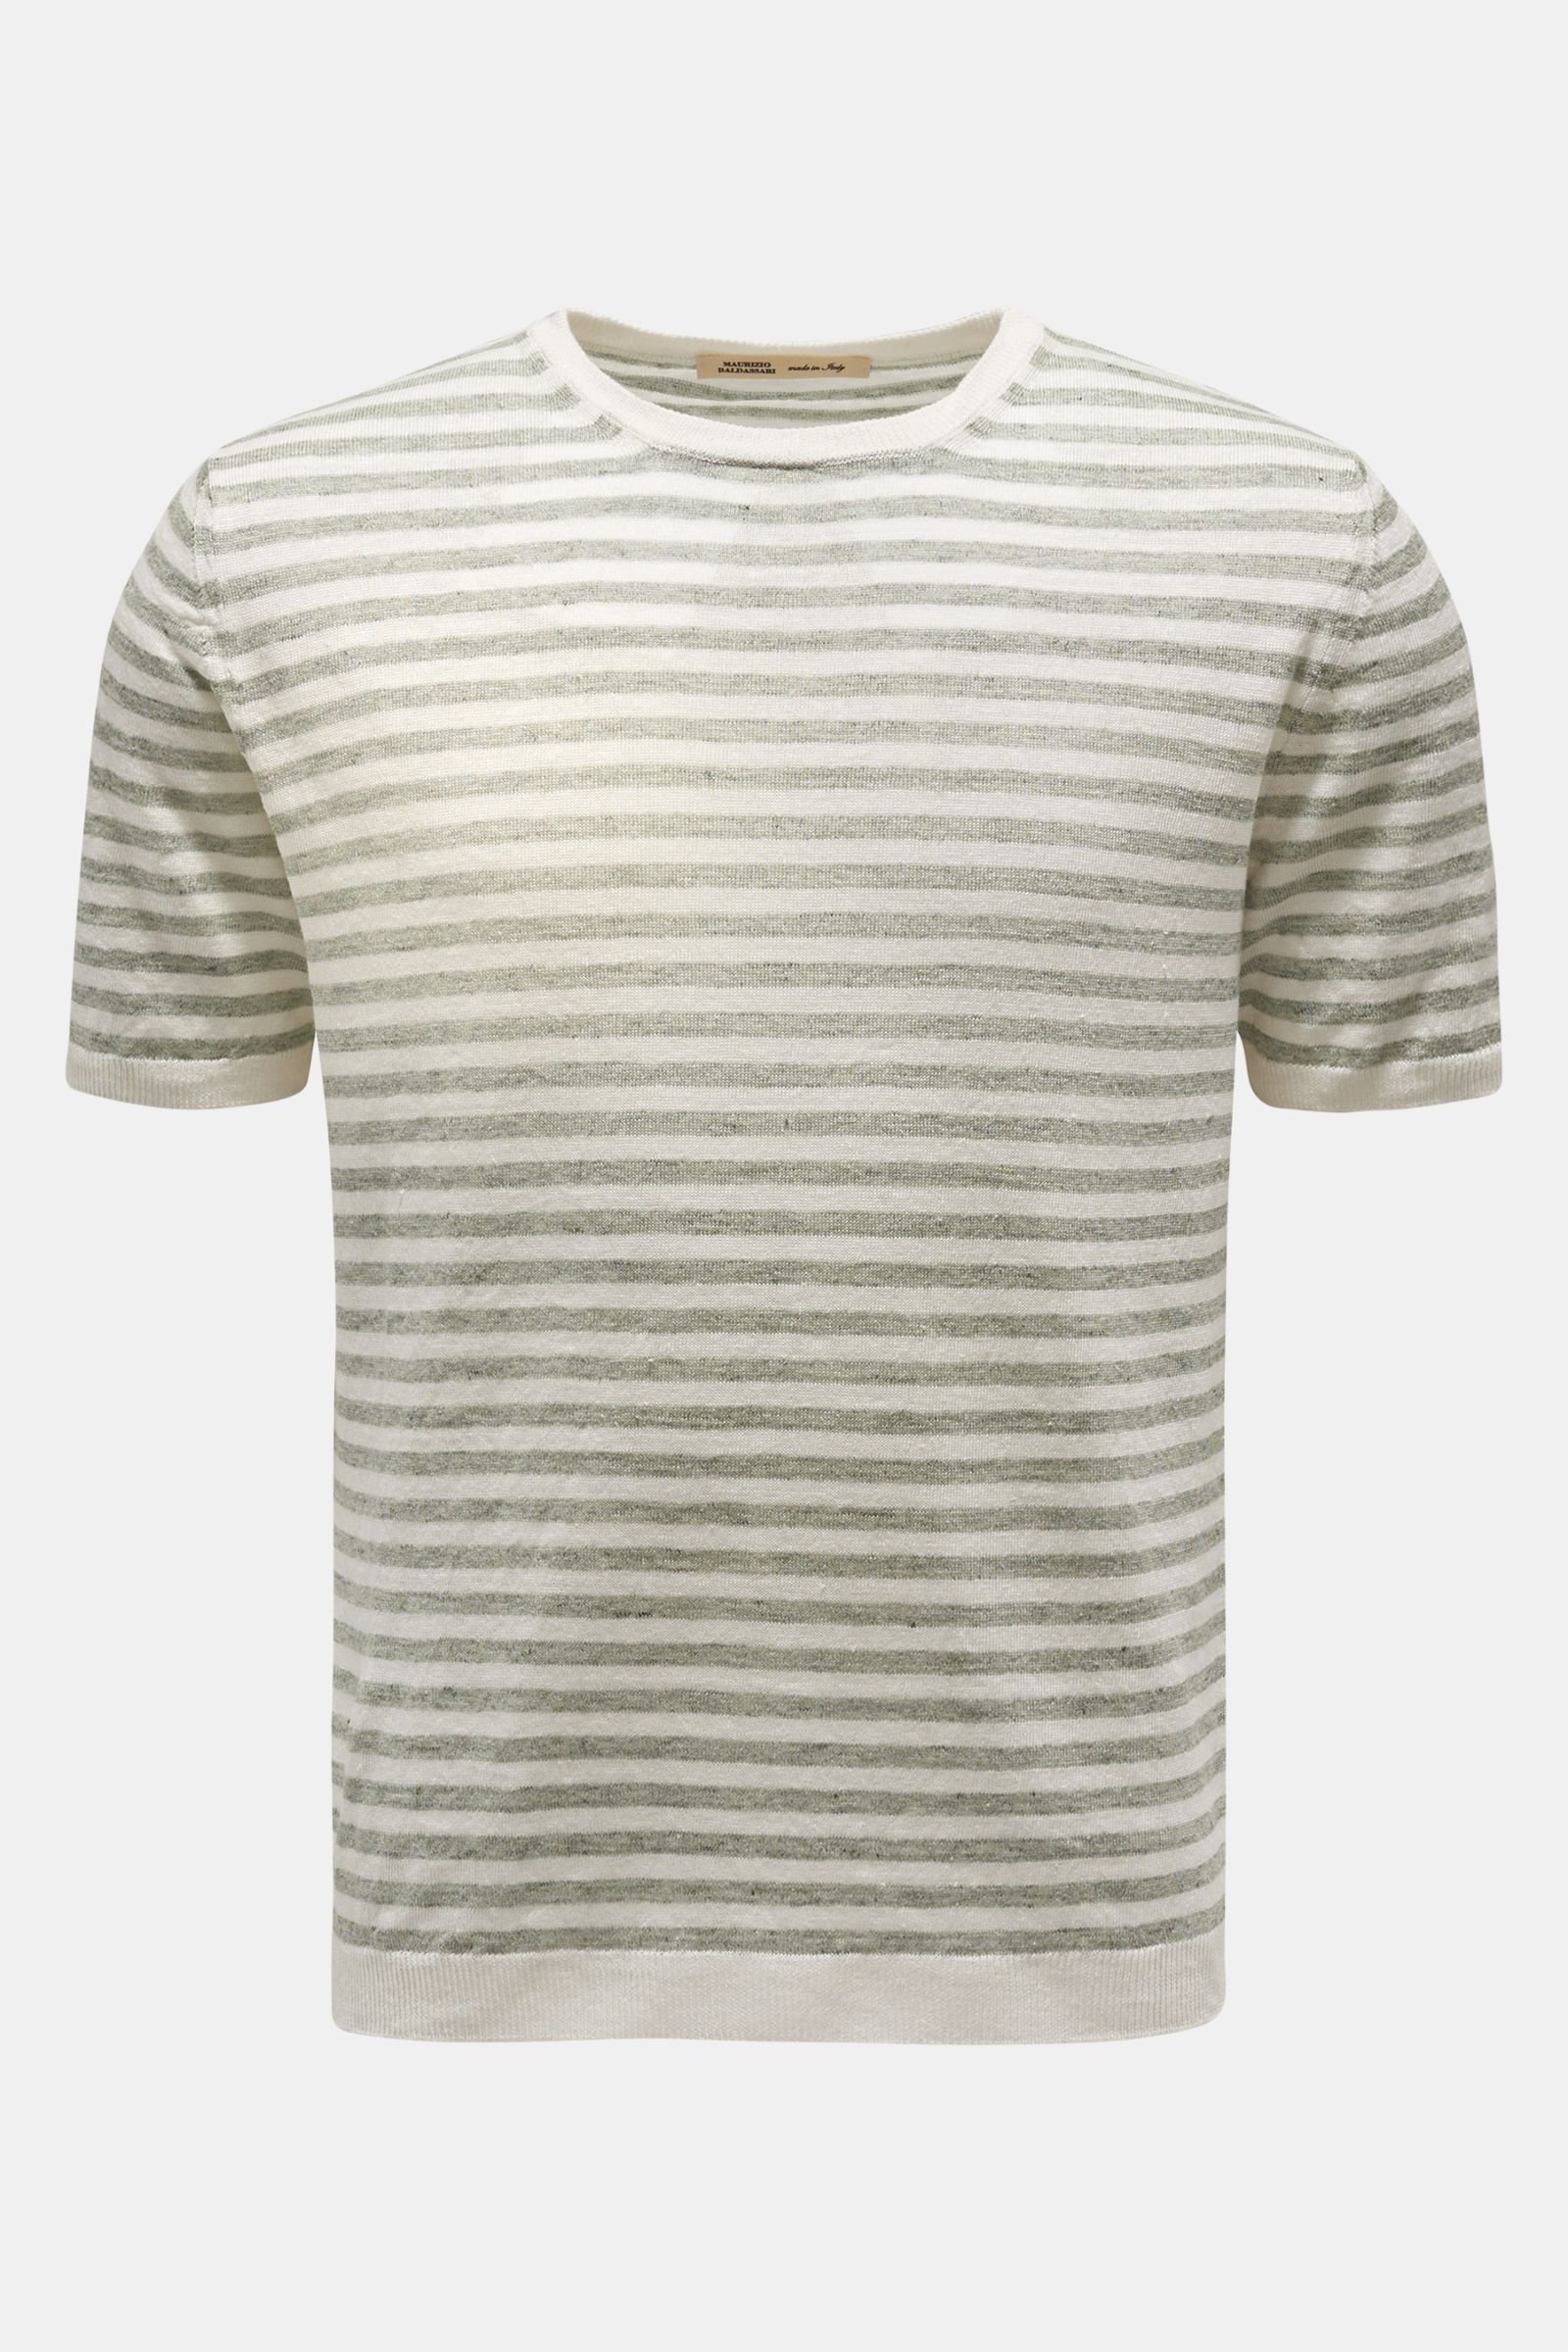 Linen short-sleeved jumper grey green/cream striped